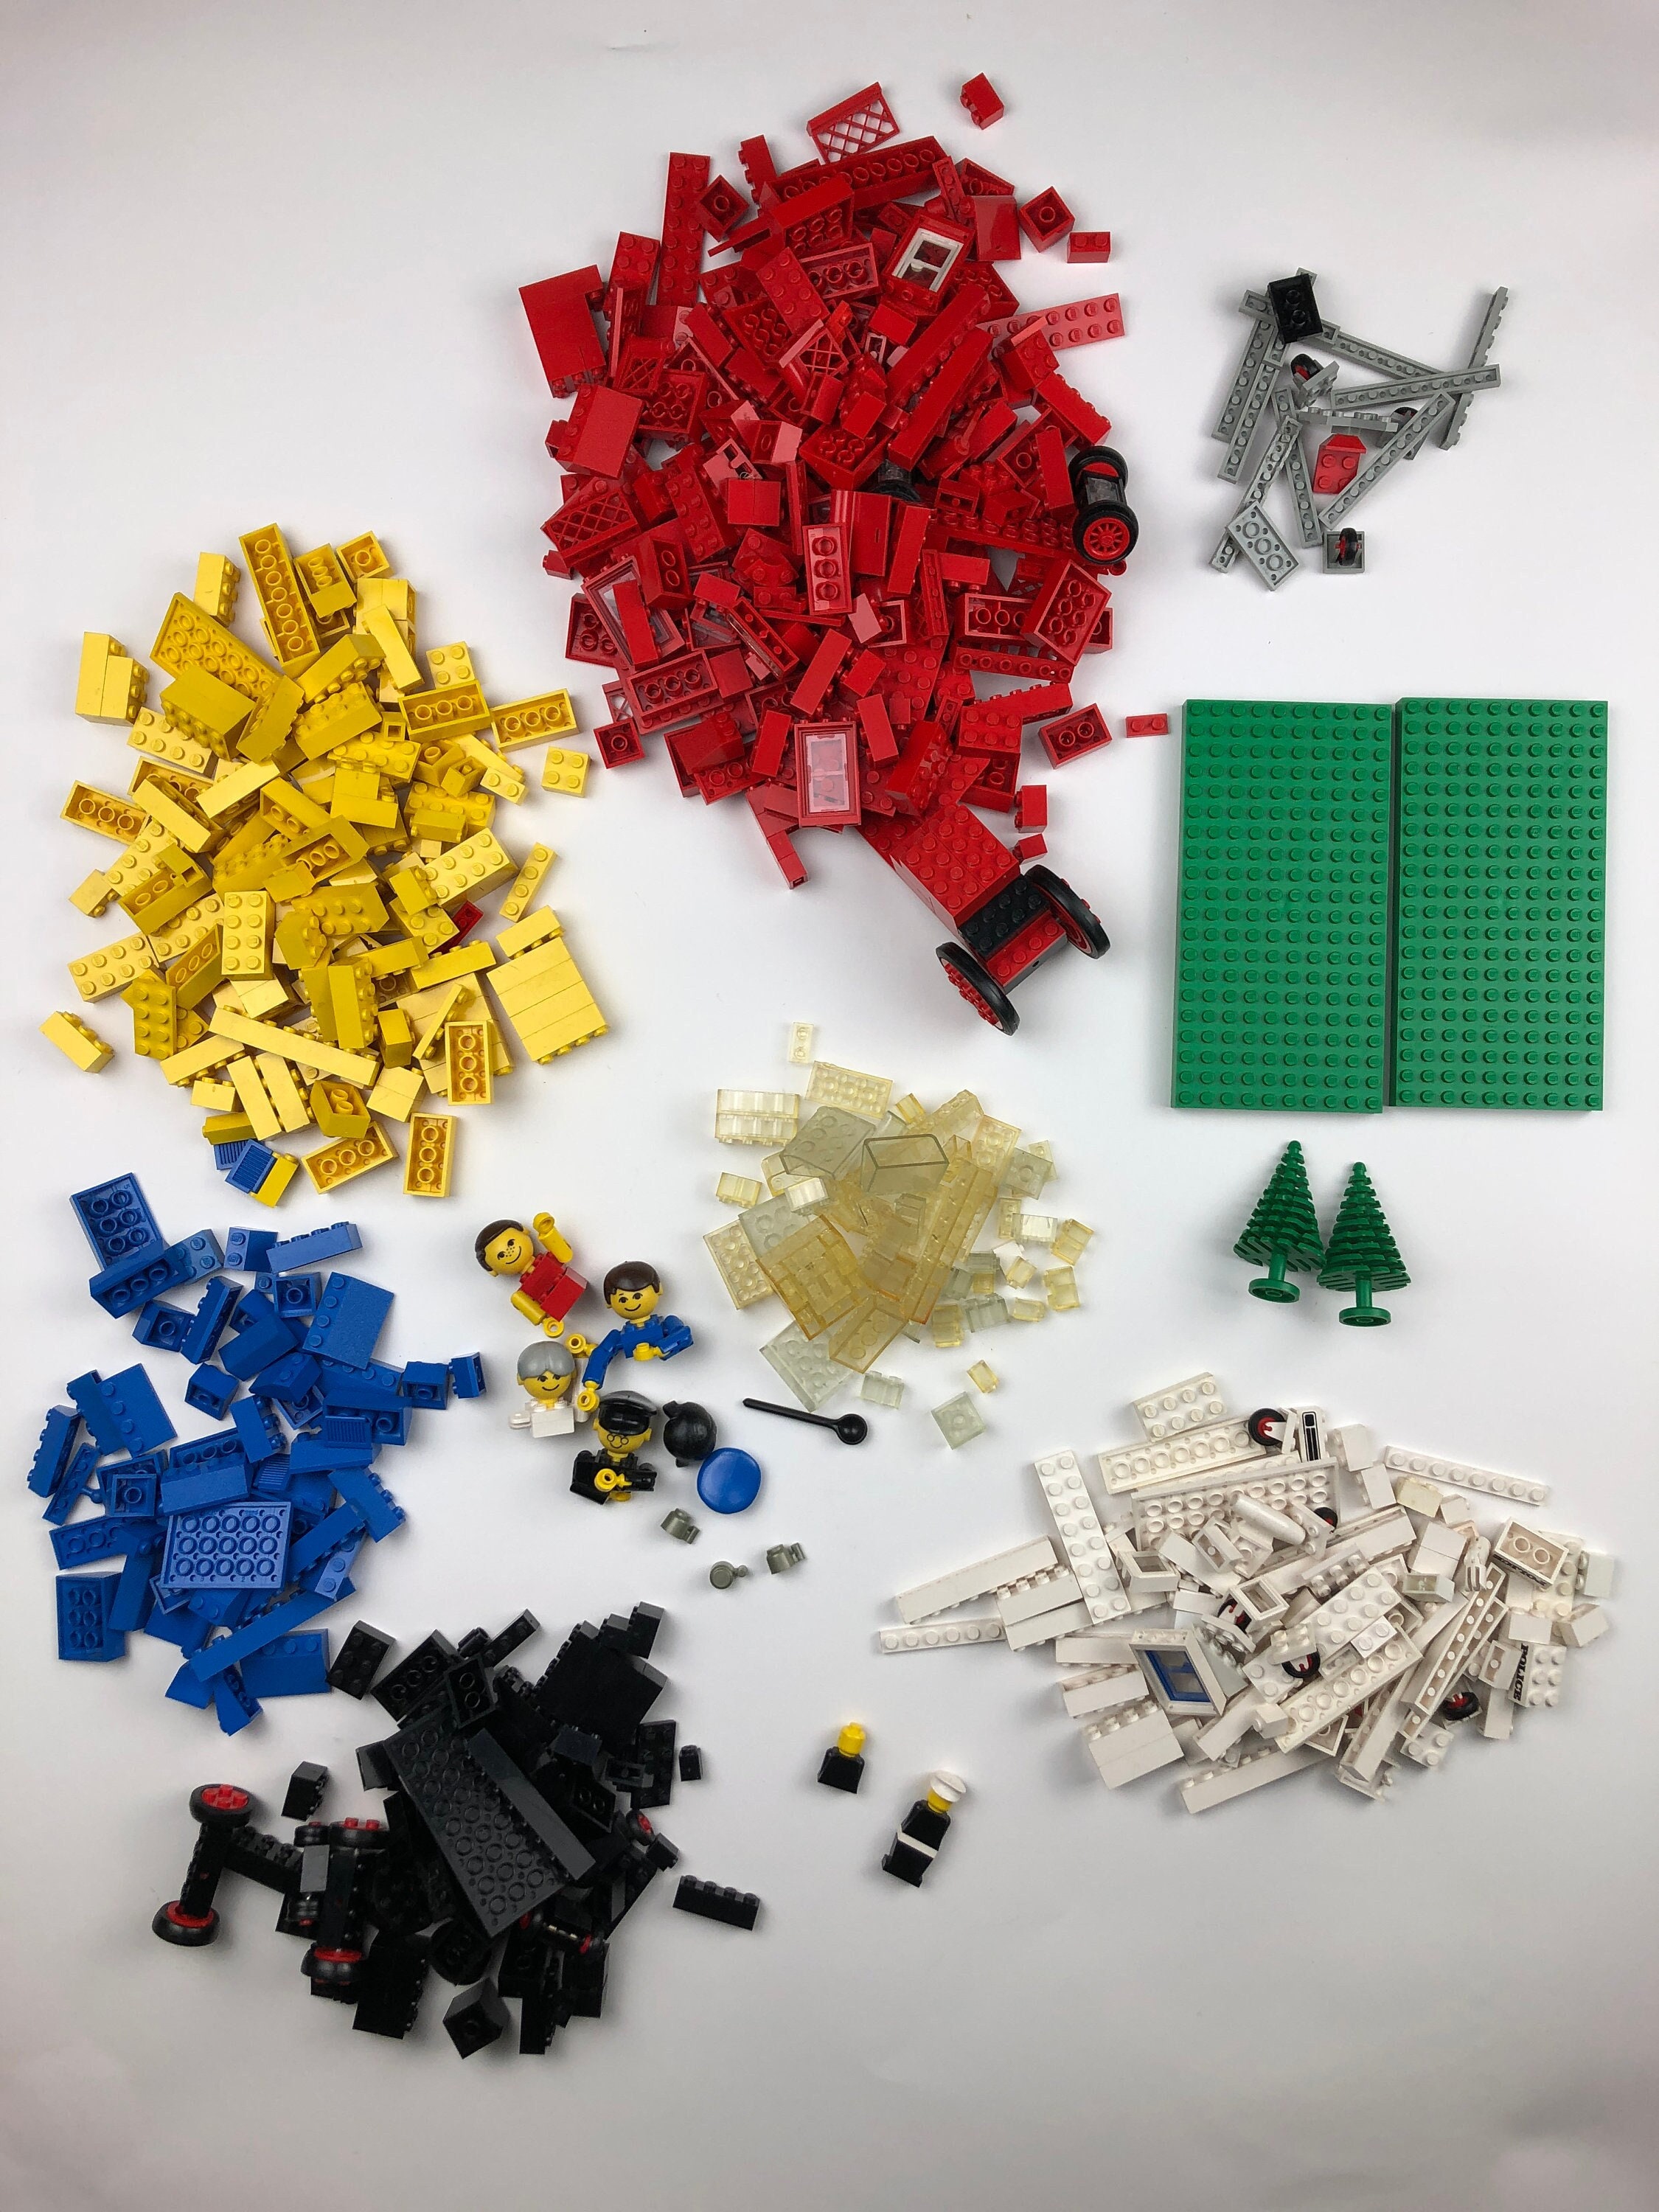 Brickfinder - Return of The LEGO Star Wars Gift Box!